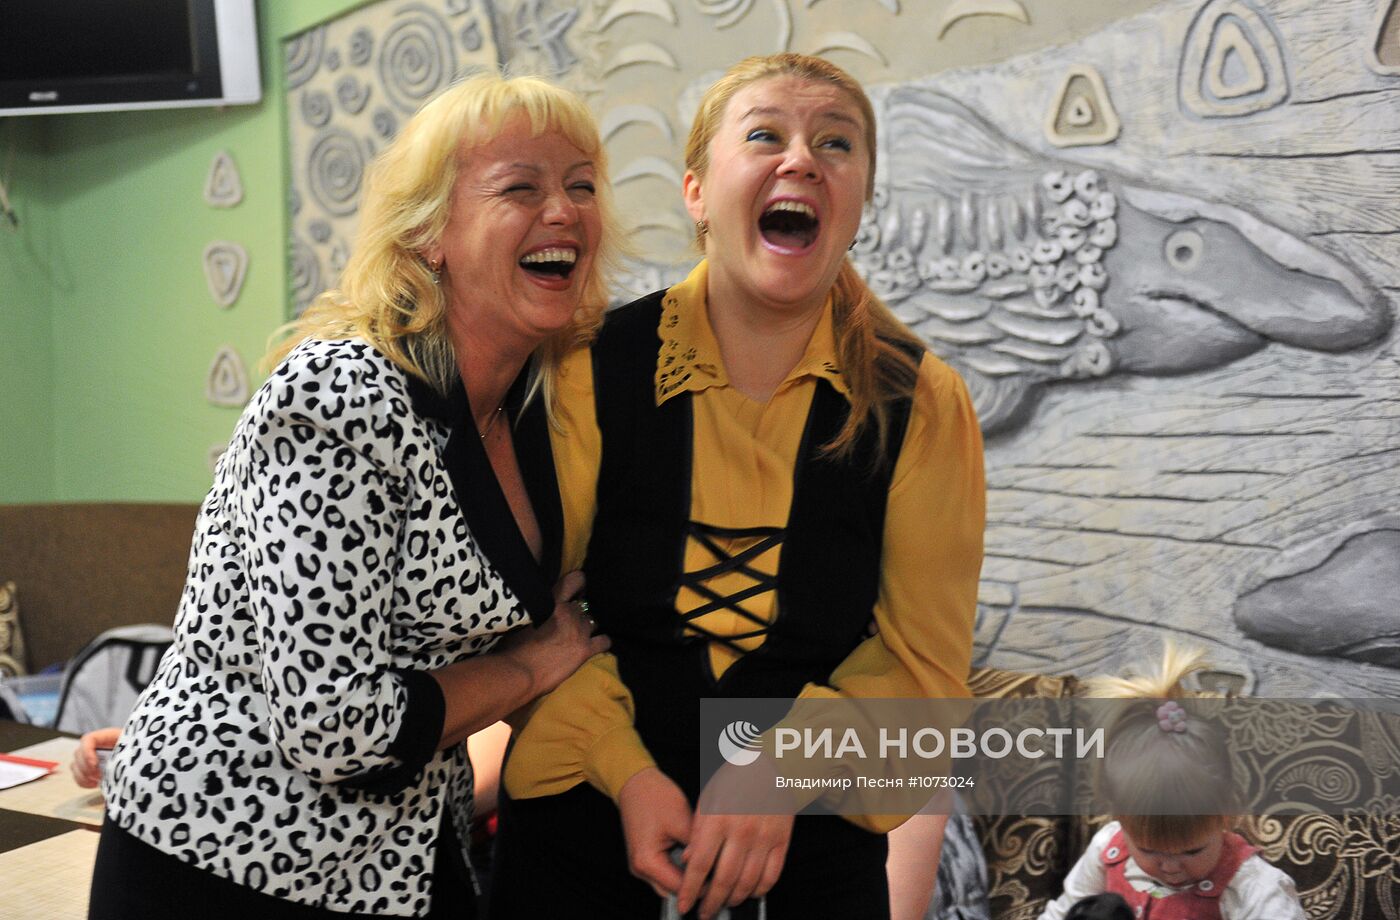 Благотворительная программа "Поезд надежды" во Владивостоке